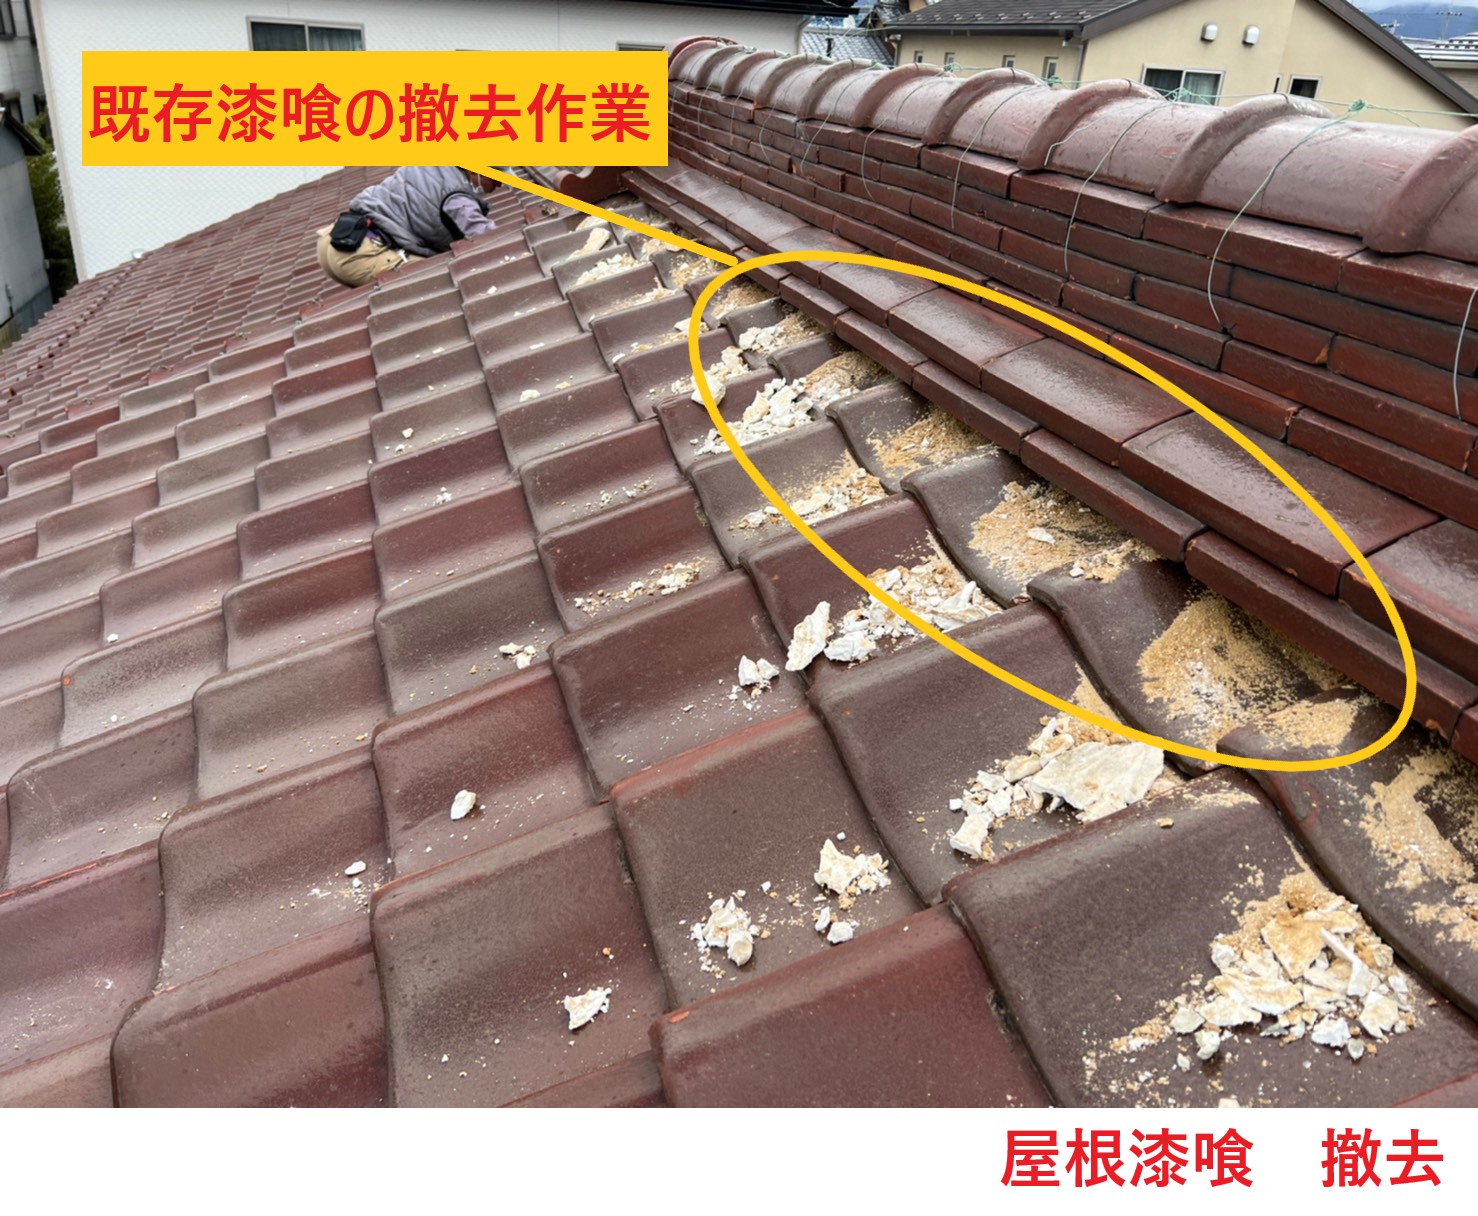 屋根漆喰の撤去 (1)